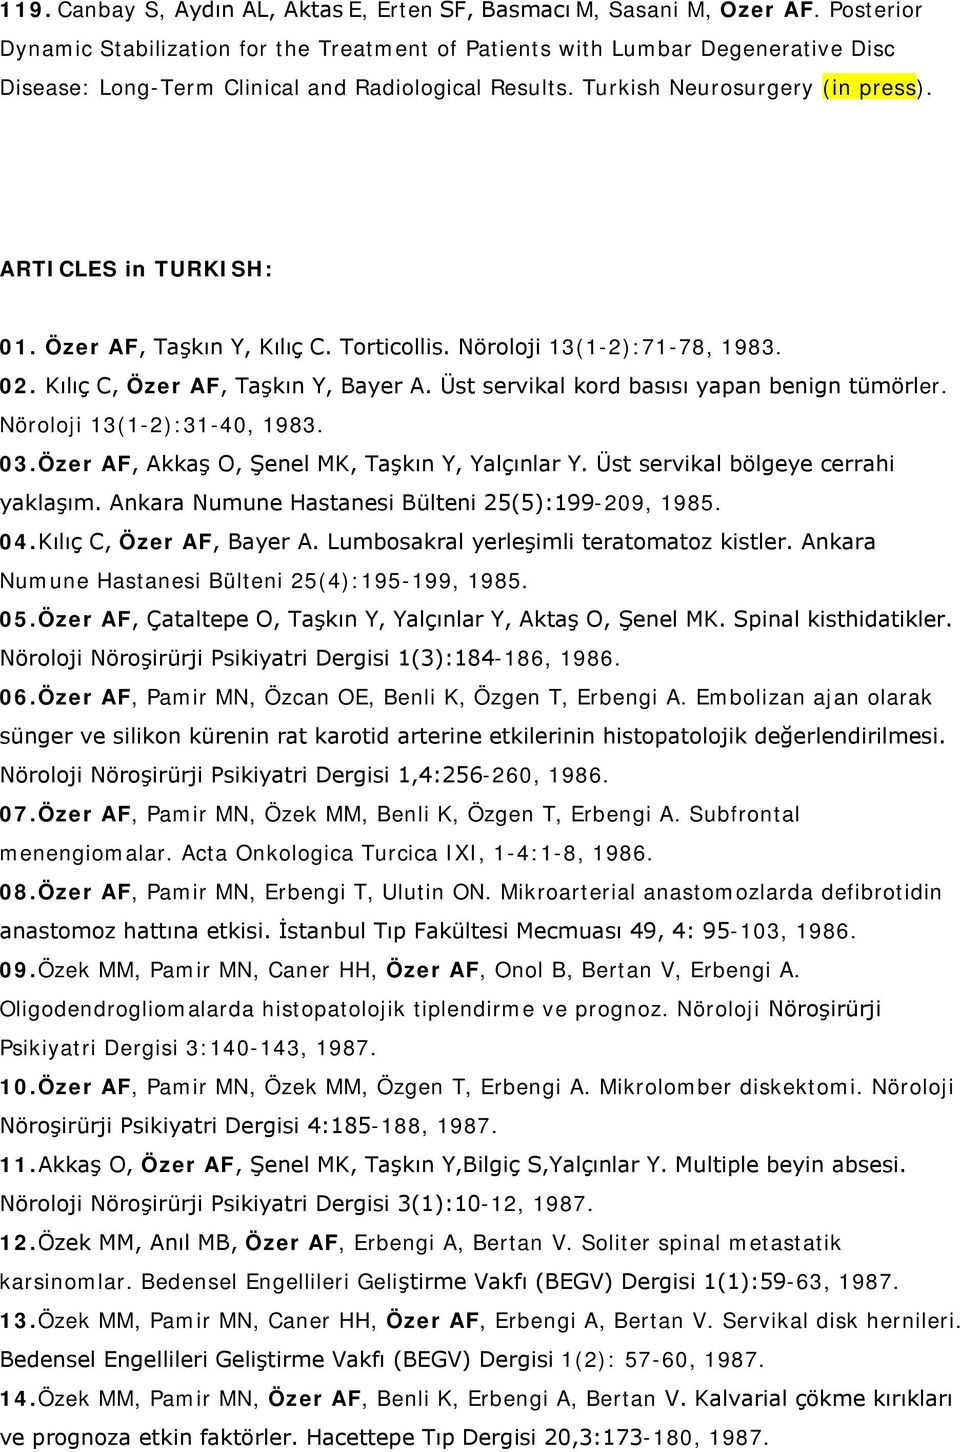 ARTICLES in TURKISH: 01. Özer AF, Taşkın Y, Kılıç C. Torticollis. Nöroloji 13(1-2):71-78, 1983. 02. Kılıç C, Özer AF, Taşkın Y, Bayer A. Üst servikal kord basısı yapan benign tümörler.